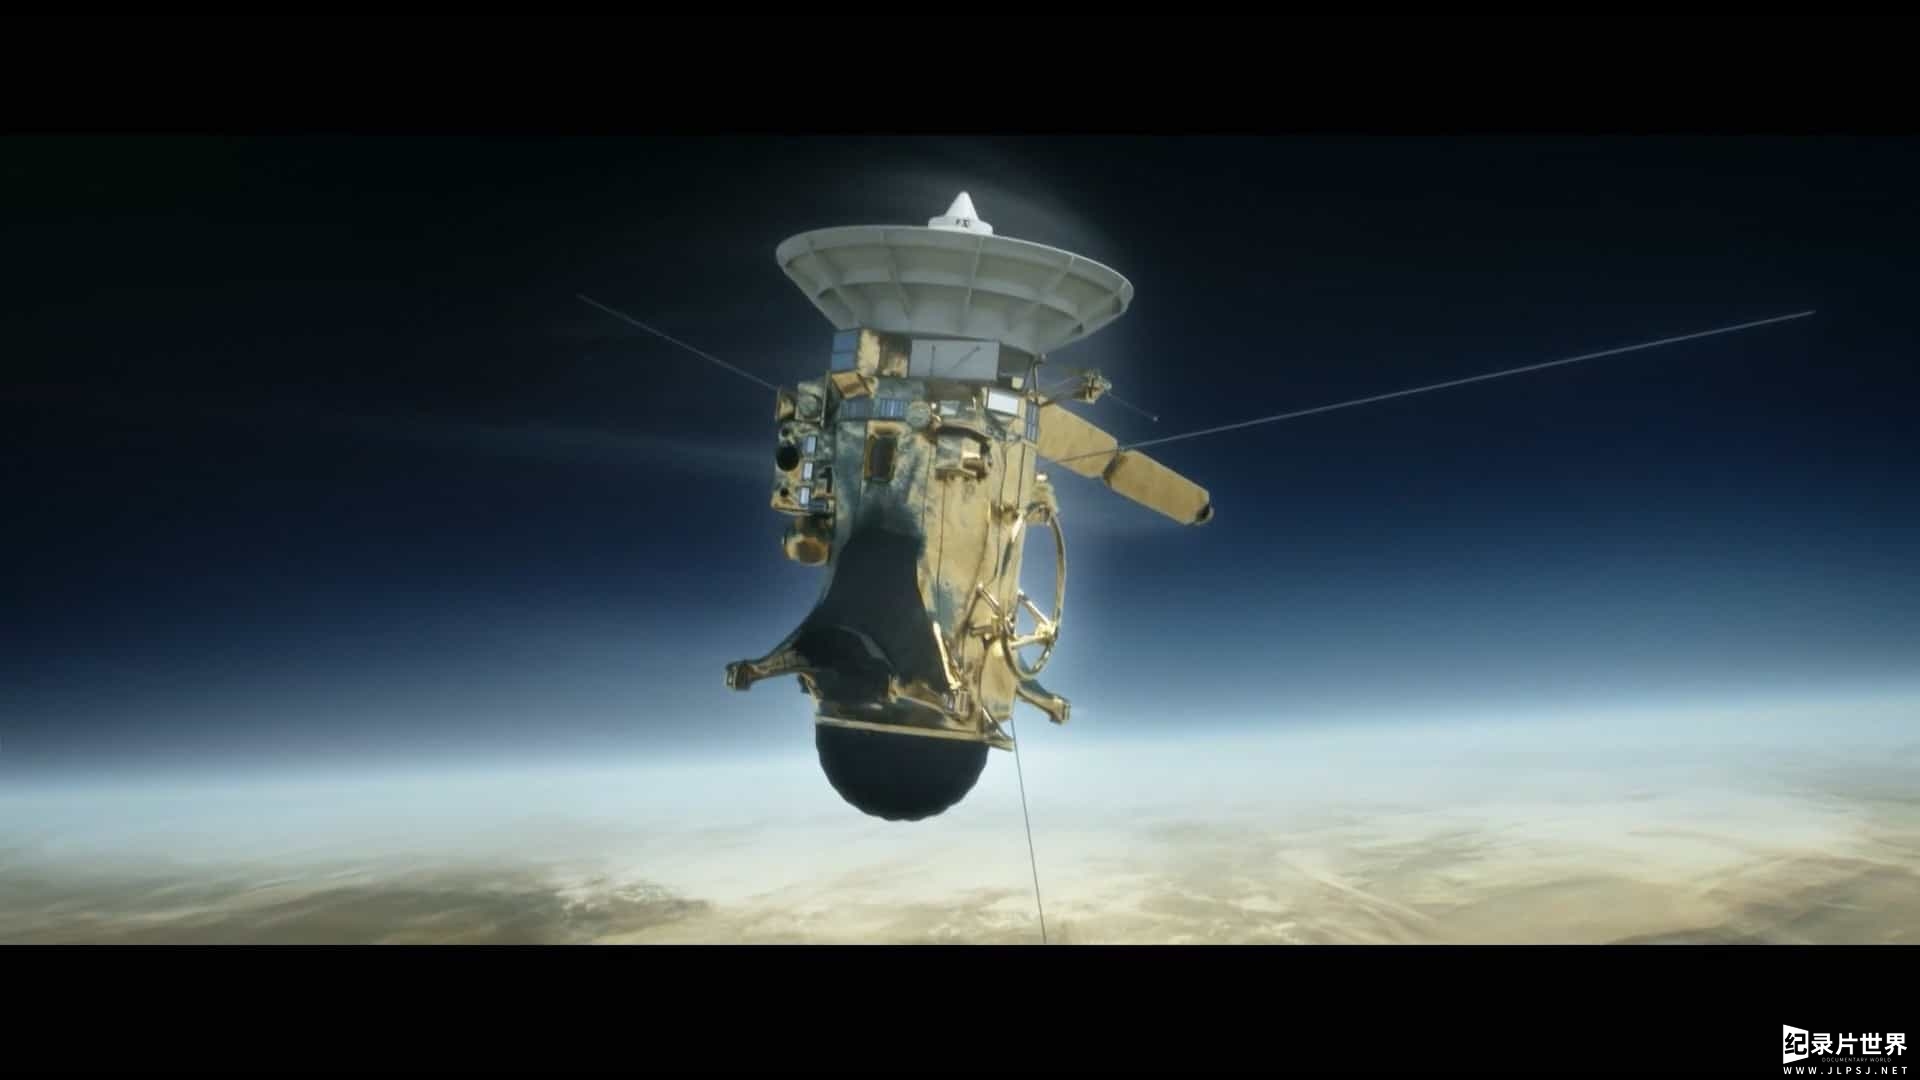 精选系列/BBC纪录片/行星探索 《再见卡西尼号 你好土星 Horizon: Goodbye Cassini - Hello Saturn》全1集